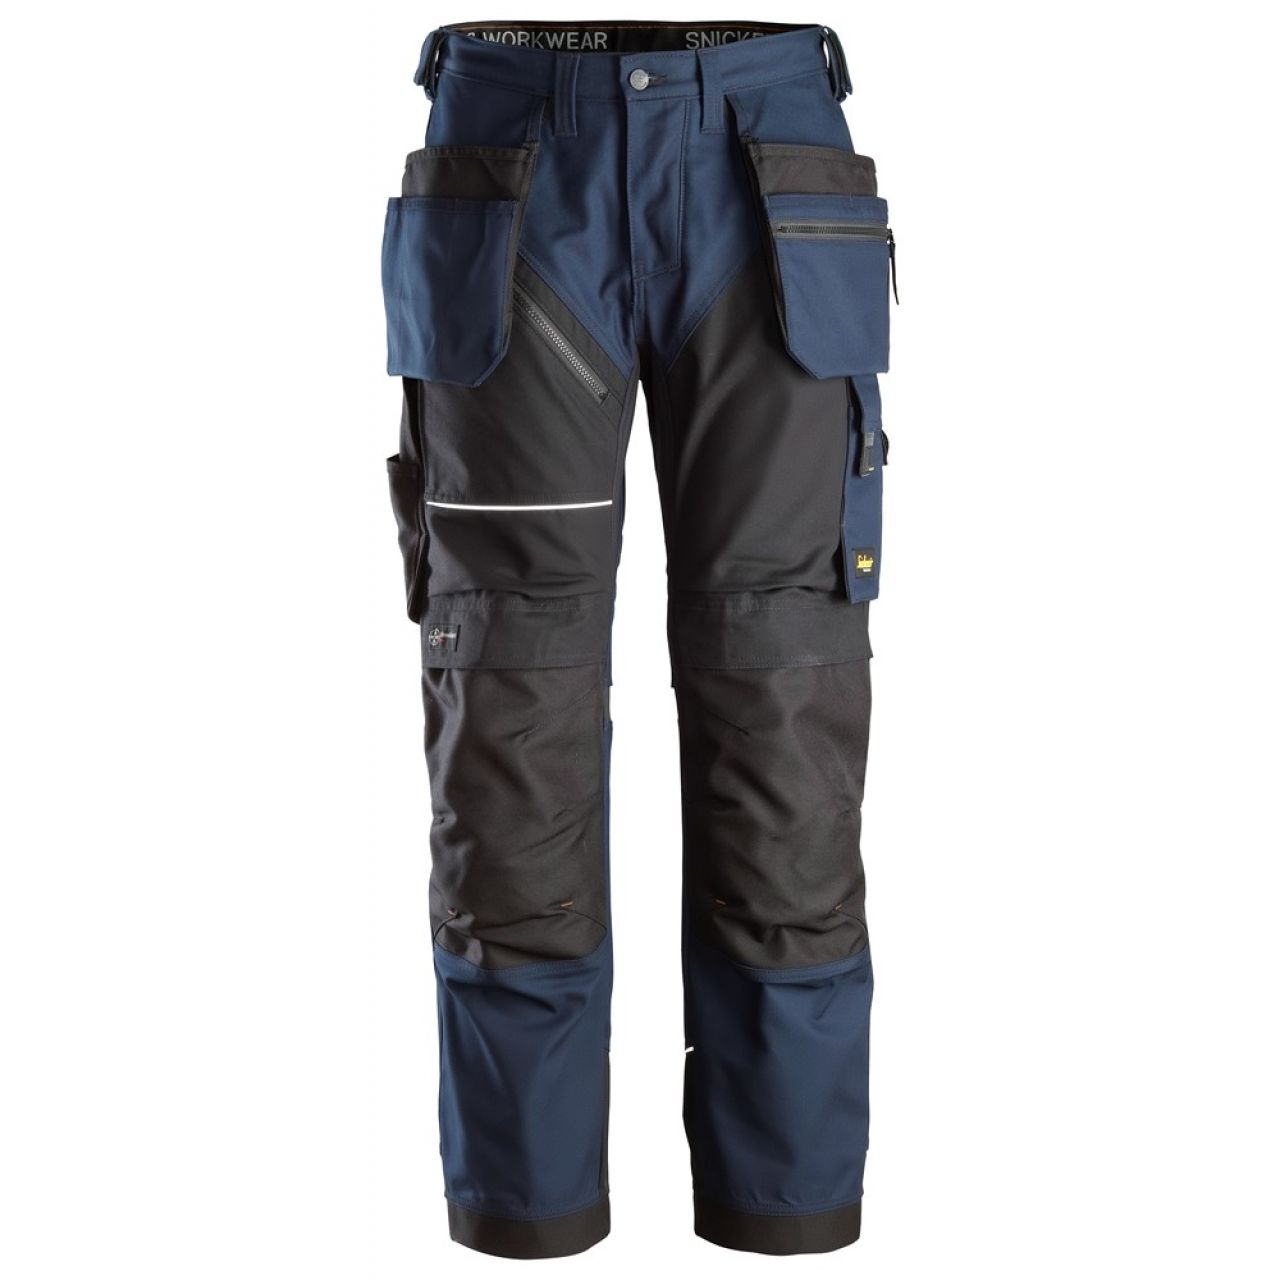 6214 Pantalones largos de trabajo con bolsillos flotantes Canvas+ RuffWork azul marino-negro talla 104